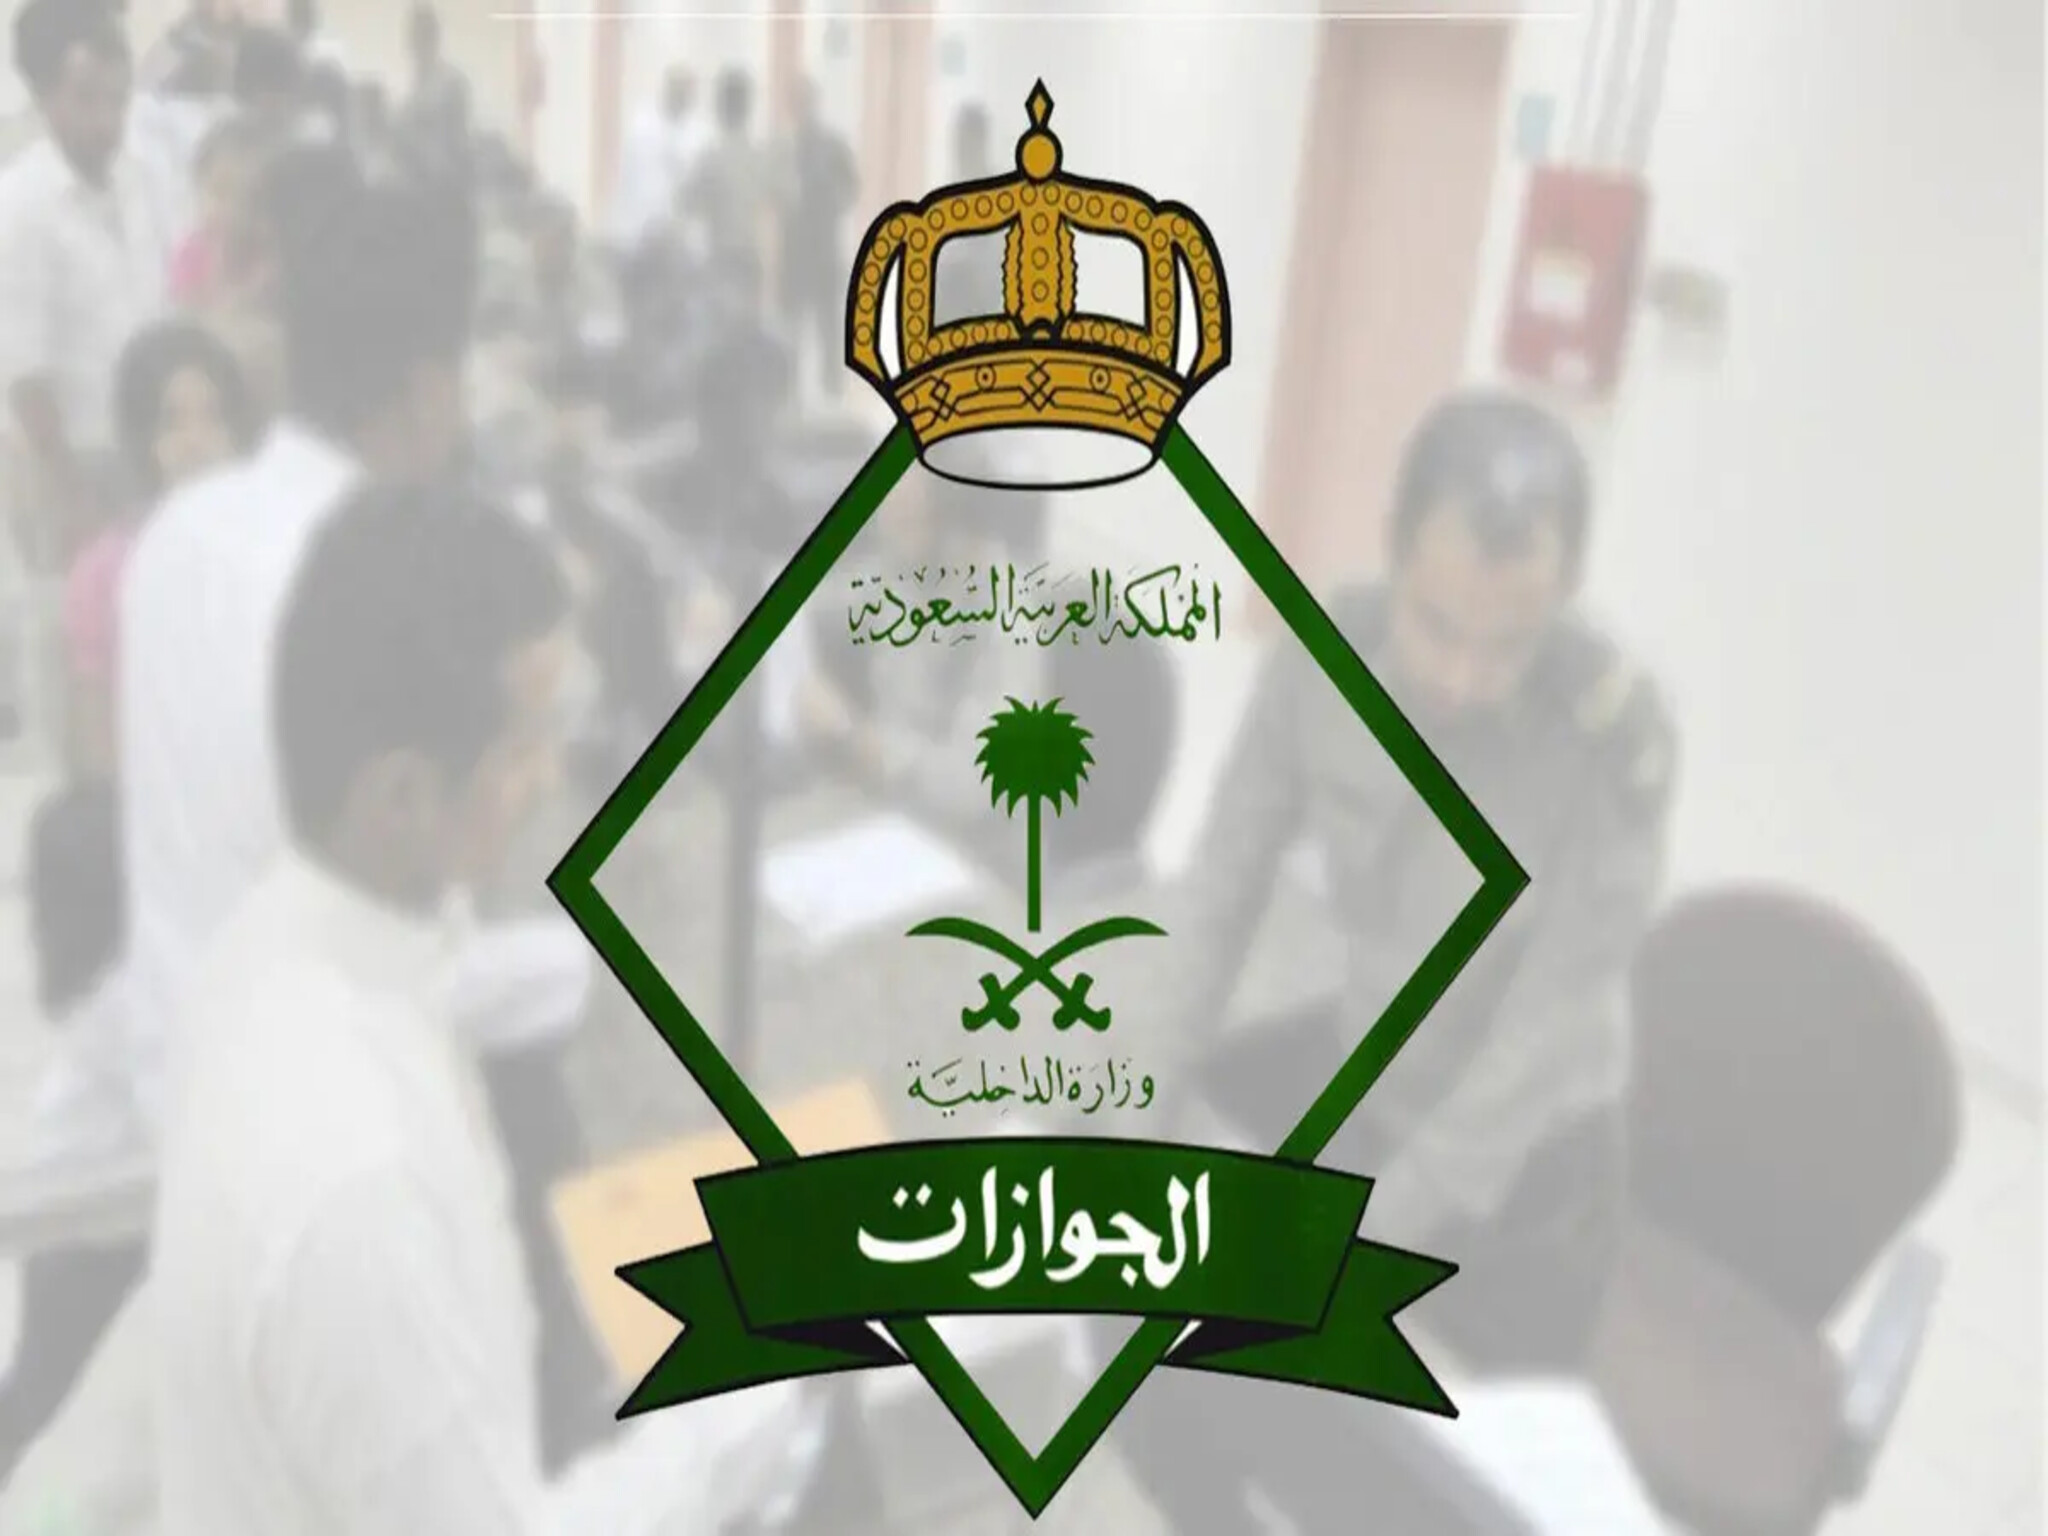 المديرية العامة للجوازات السعودية تعلن إيقاف صدور تأشيرة الزيارة العائلية 1445هـ